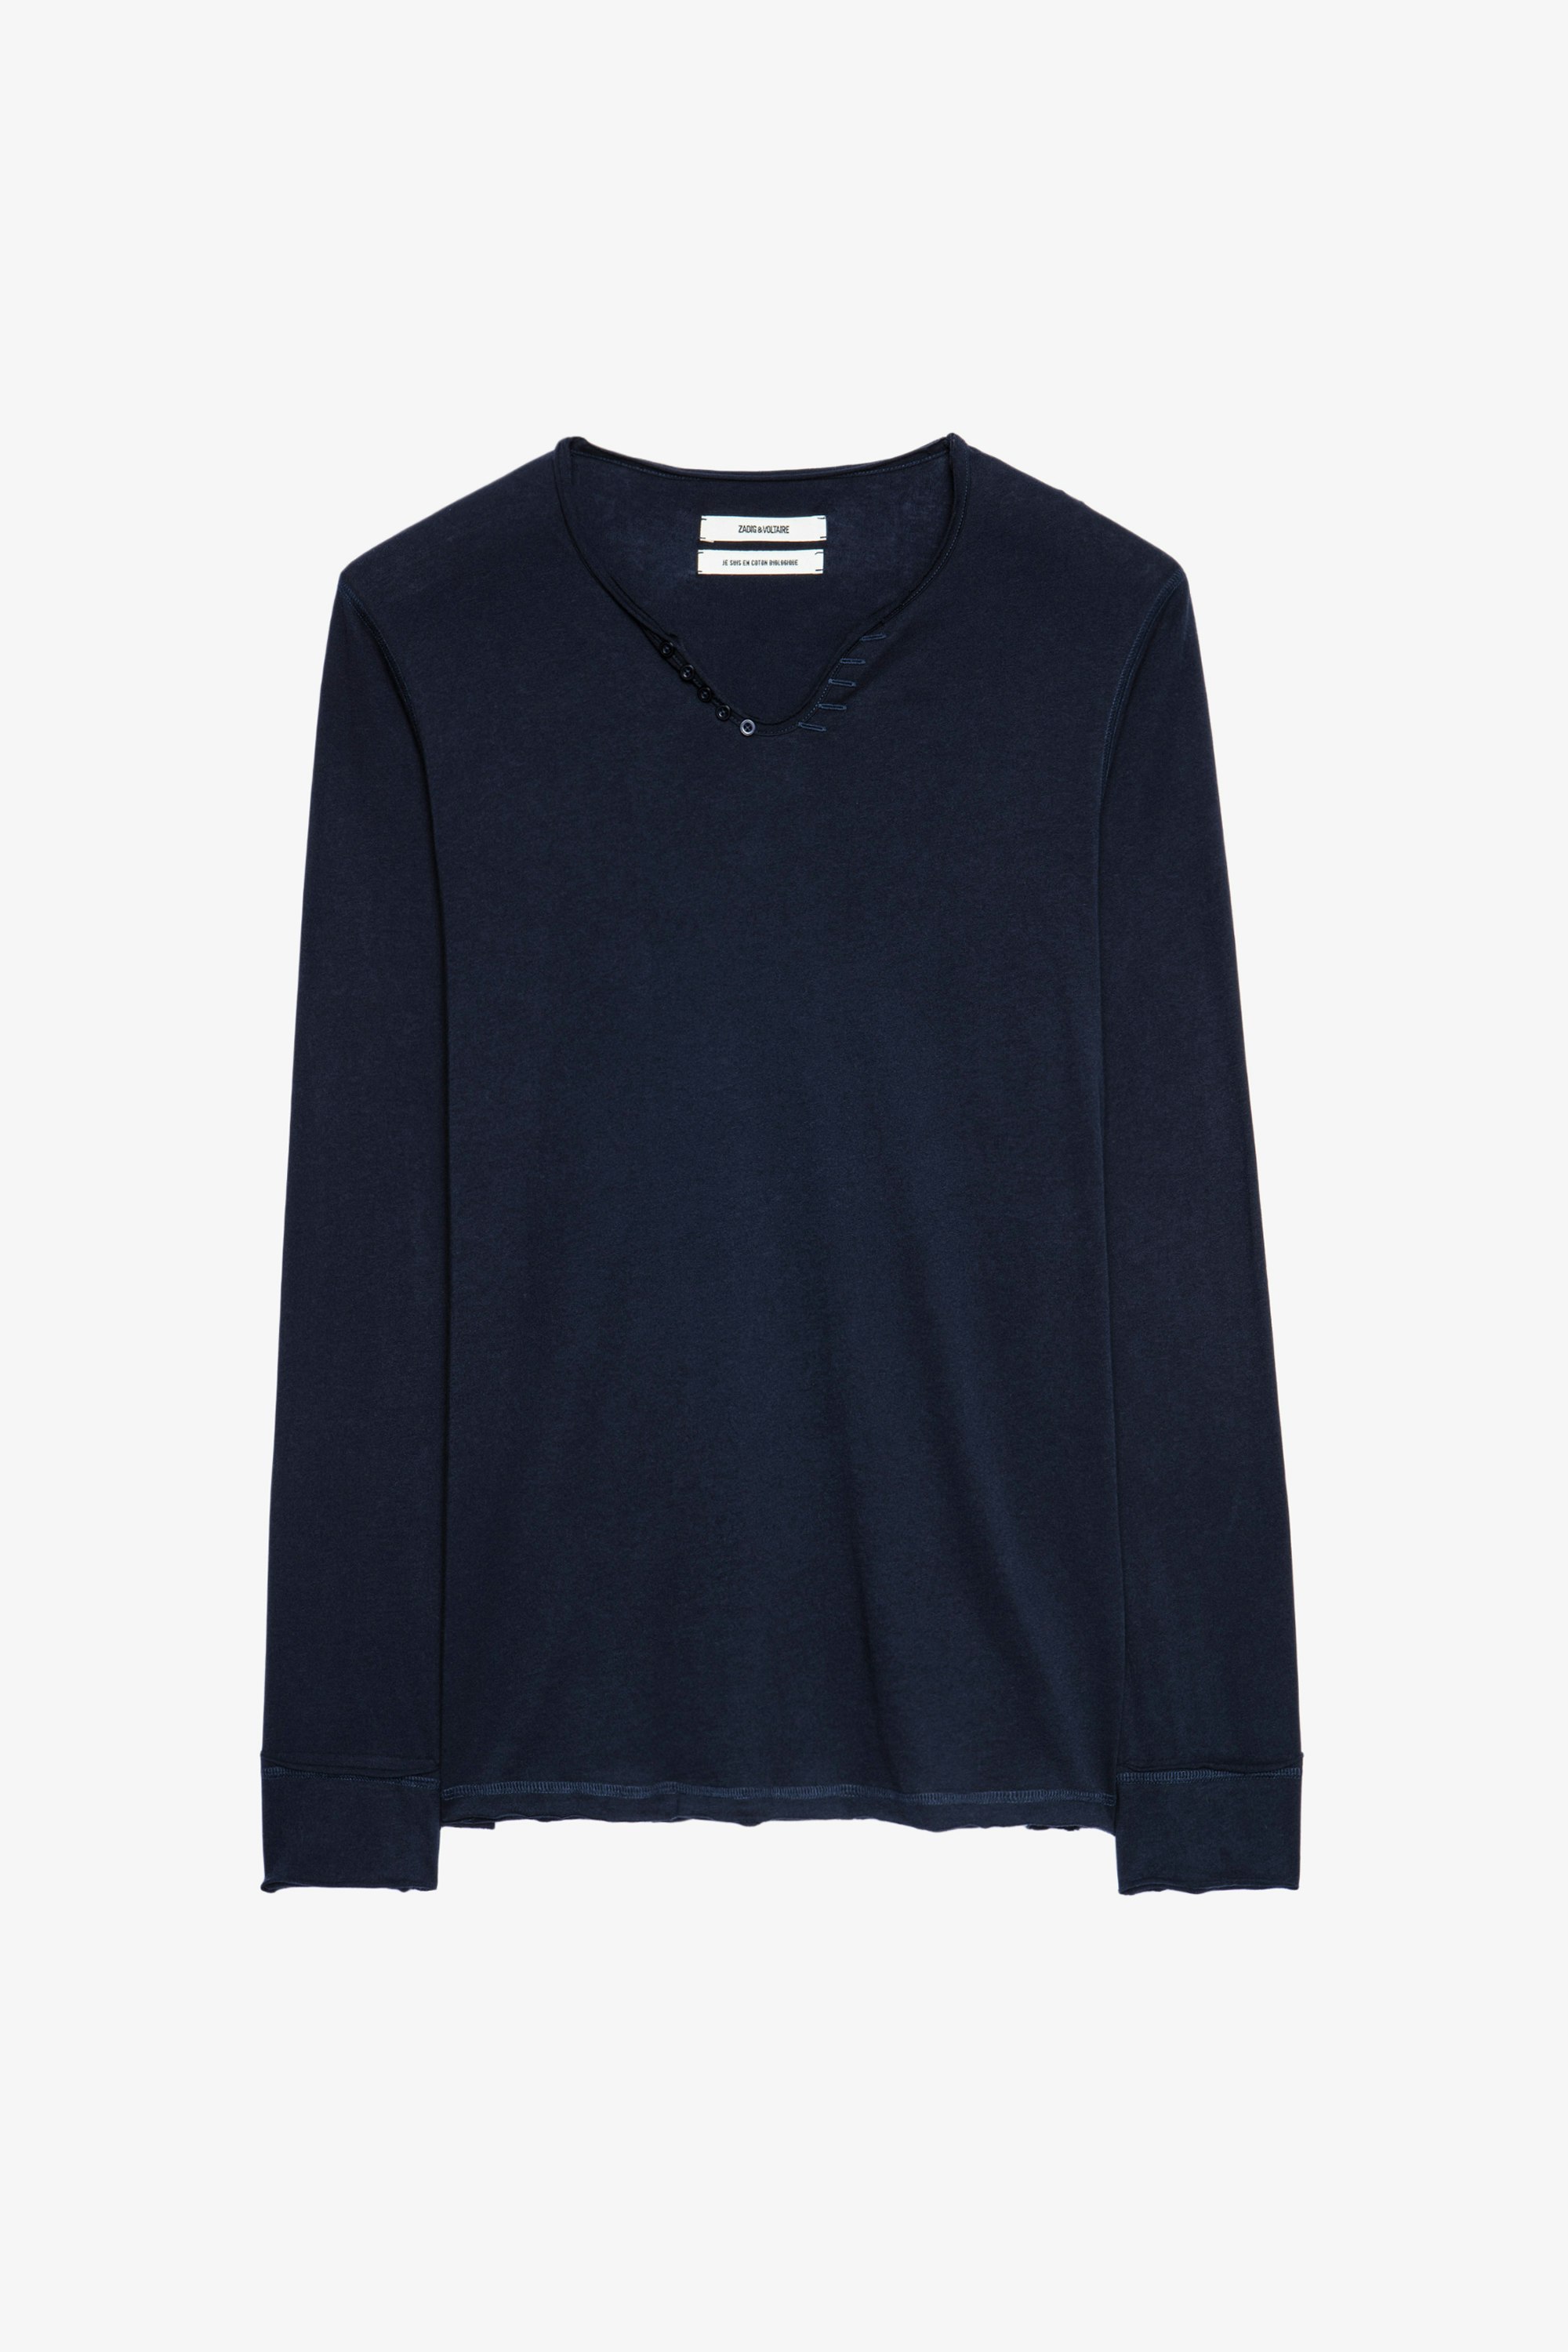 Henley-T-Shirt Monastir Blaues Herren-T-shirt aus Baumwolle mit Henley-Ausschnitt